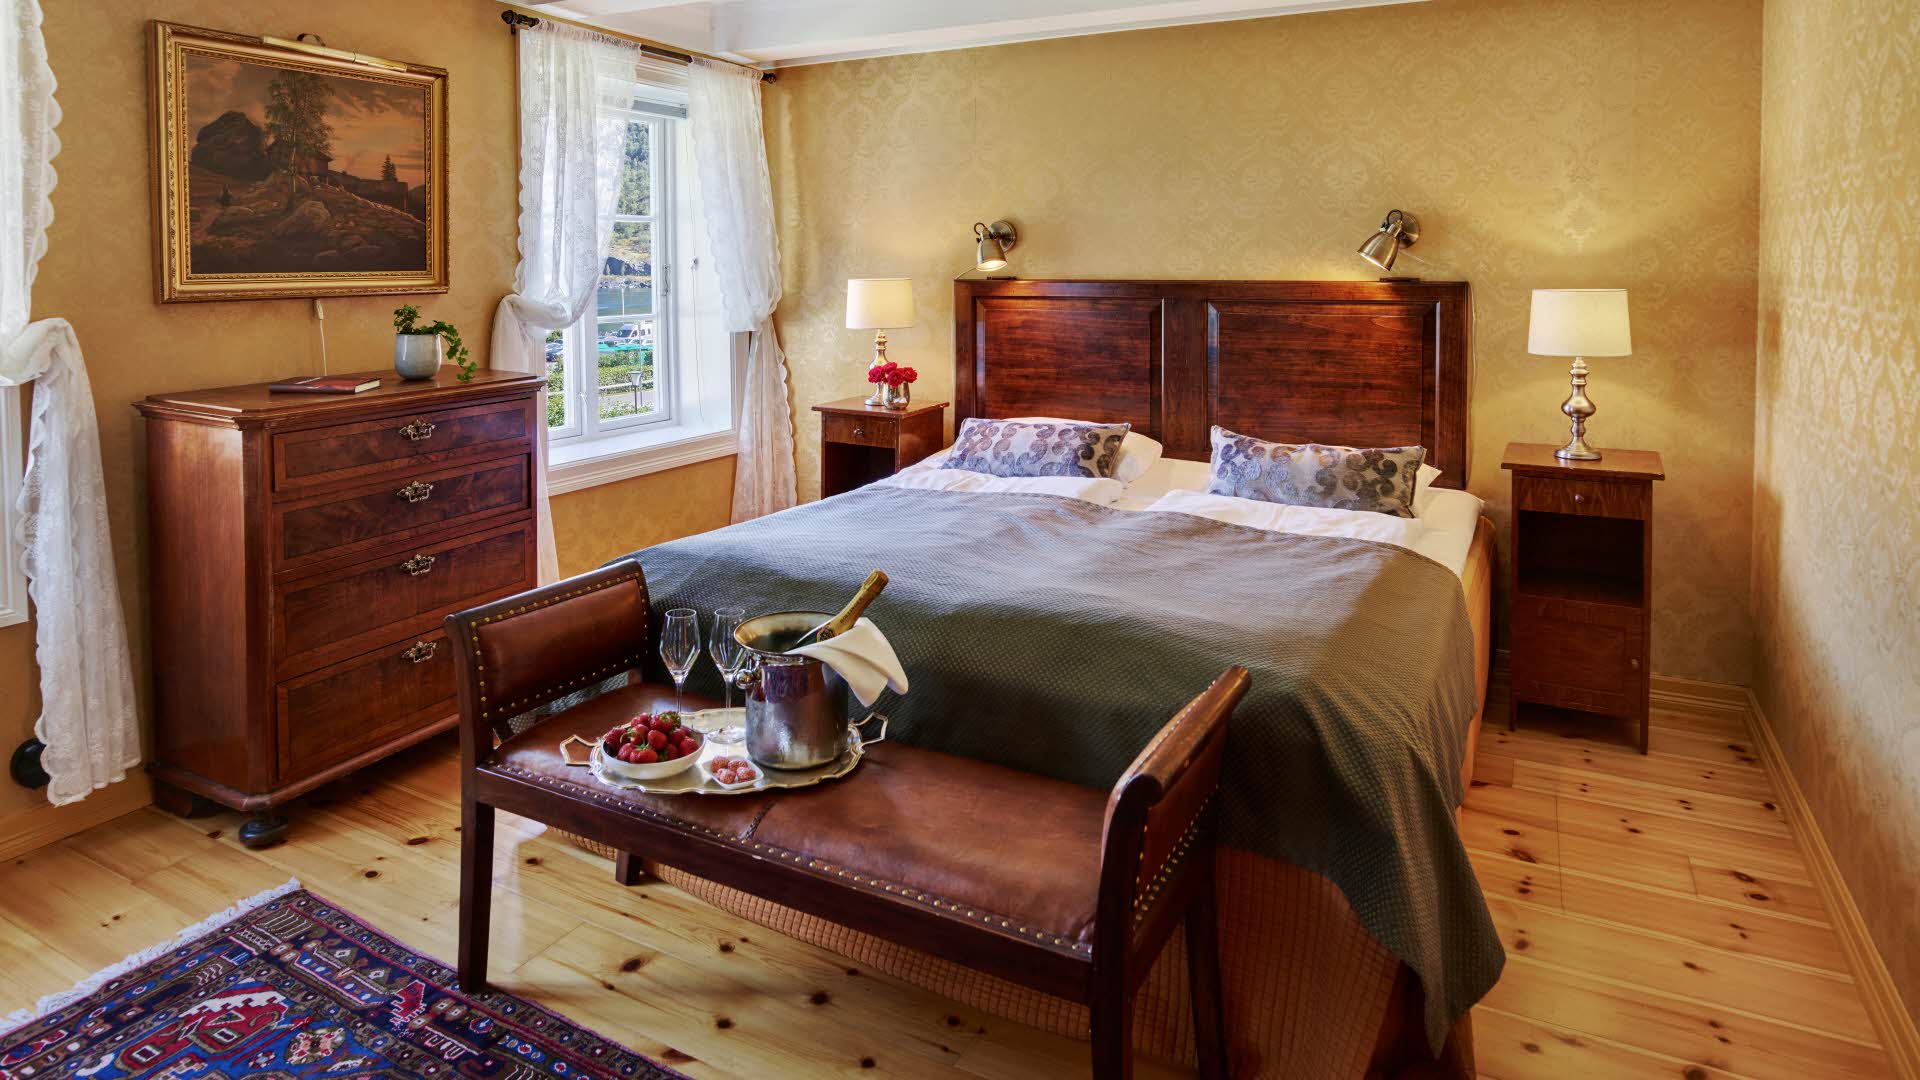 Historisk rom på Fretheim Hotel med dobbeltseng, blondegardiner og et brett med champagne og jordbær oppå en antikk benk i skinn